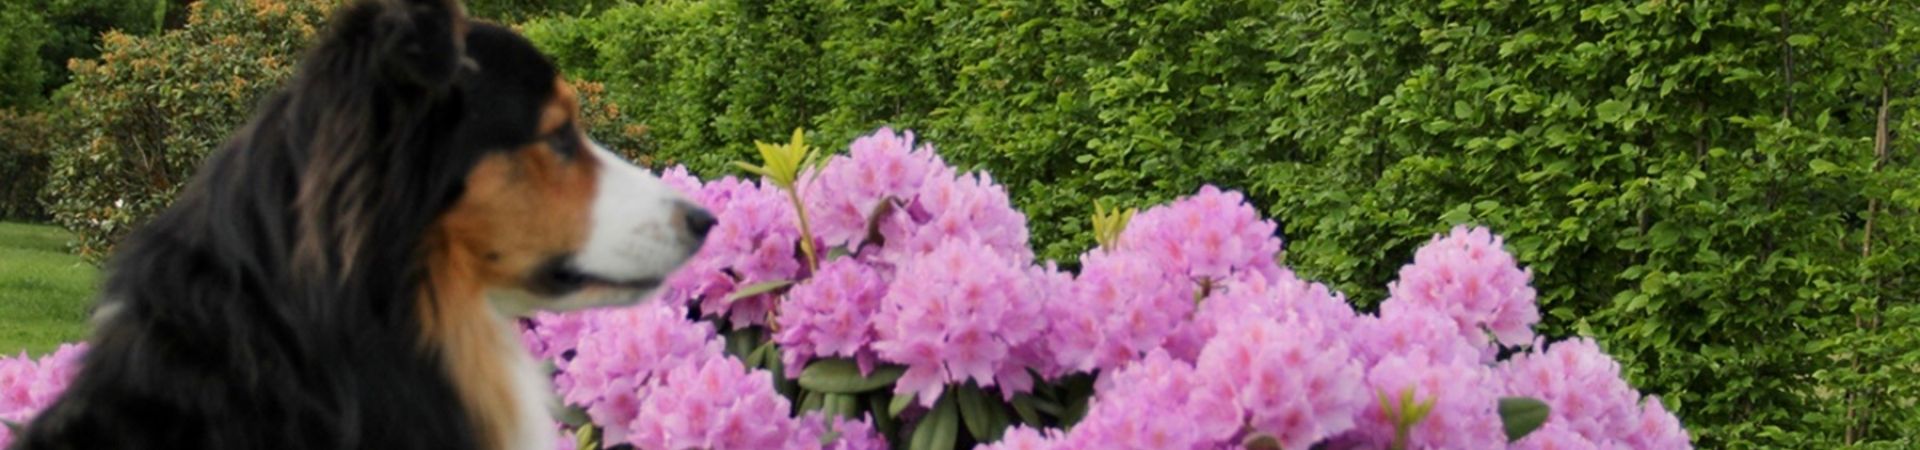 Rhododendron flieder.jpg